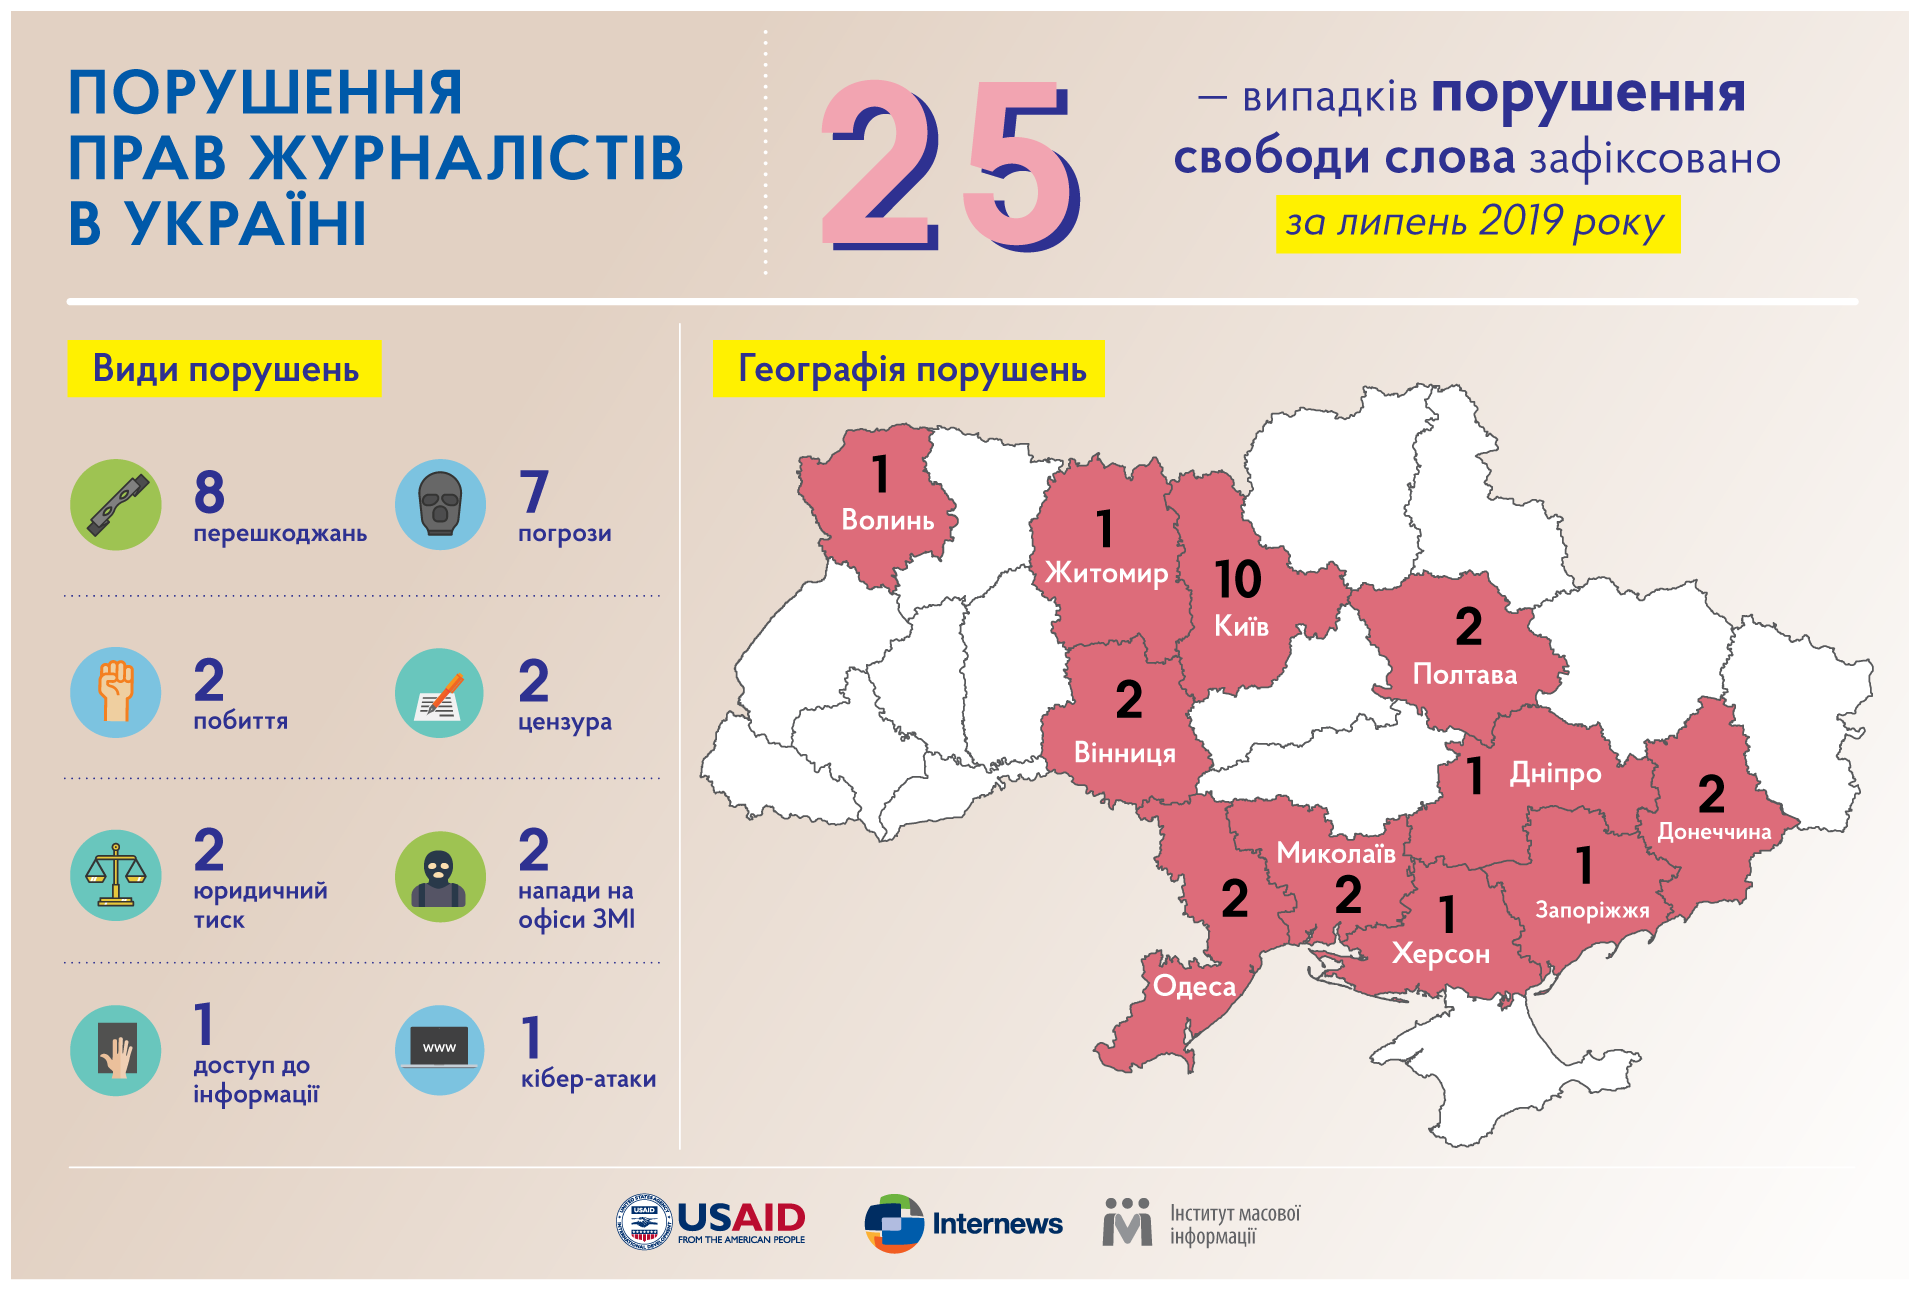 У липні зафіксовано 25 випадків порушення свободи слова в Україні, – ІМІ